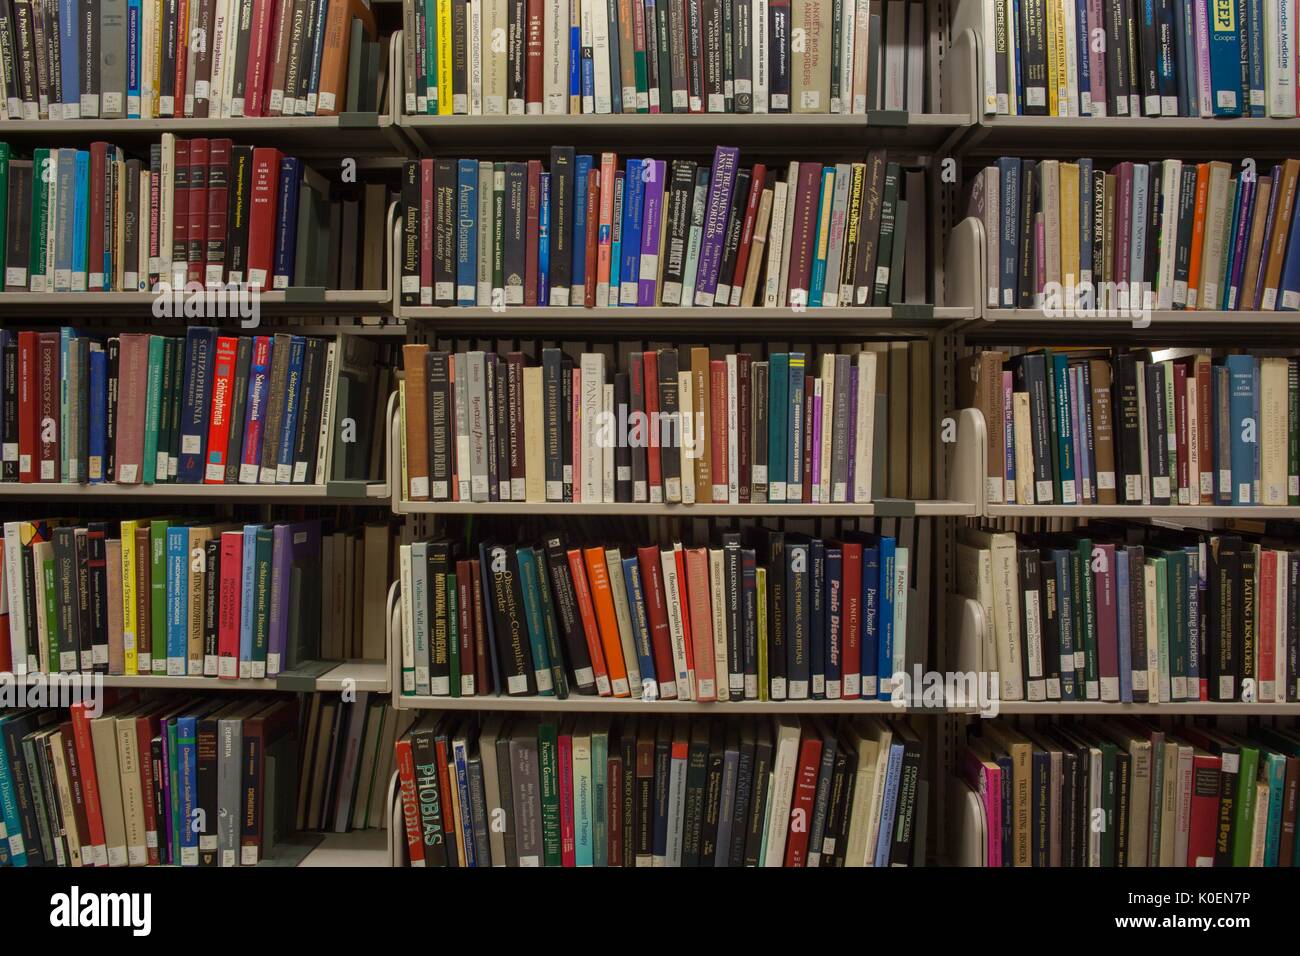 Regale voller Bücher auf C-Level, eine ruhige Etage zum Studieren, in der Milton S. Eisenhower Library auf dem Homewood Campus der Johns Hopkins University in Baltimore, Maryland, 2014. Mit Freundlicher Genehmigung Von Eric Chen. Stockfoto